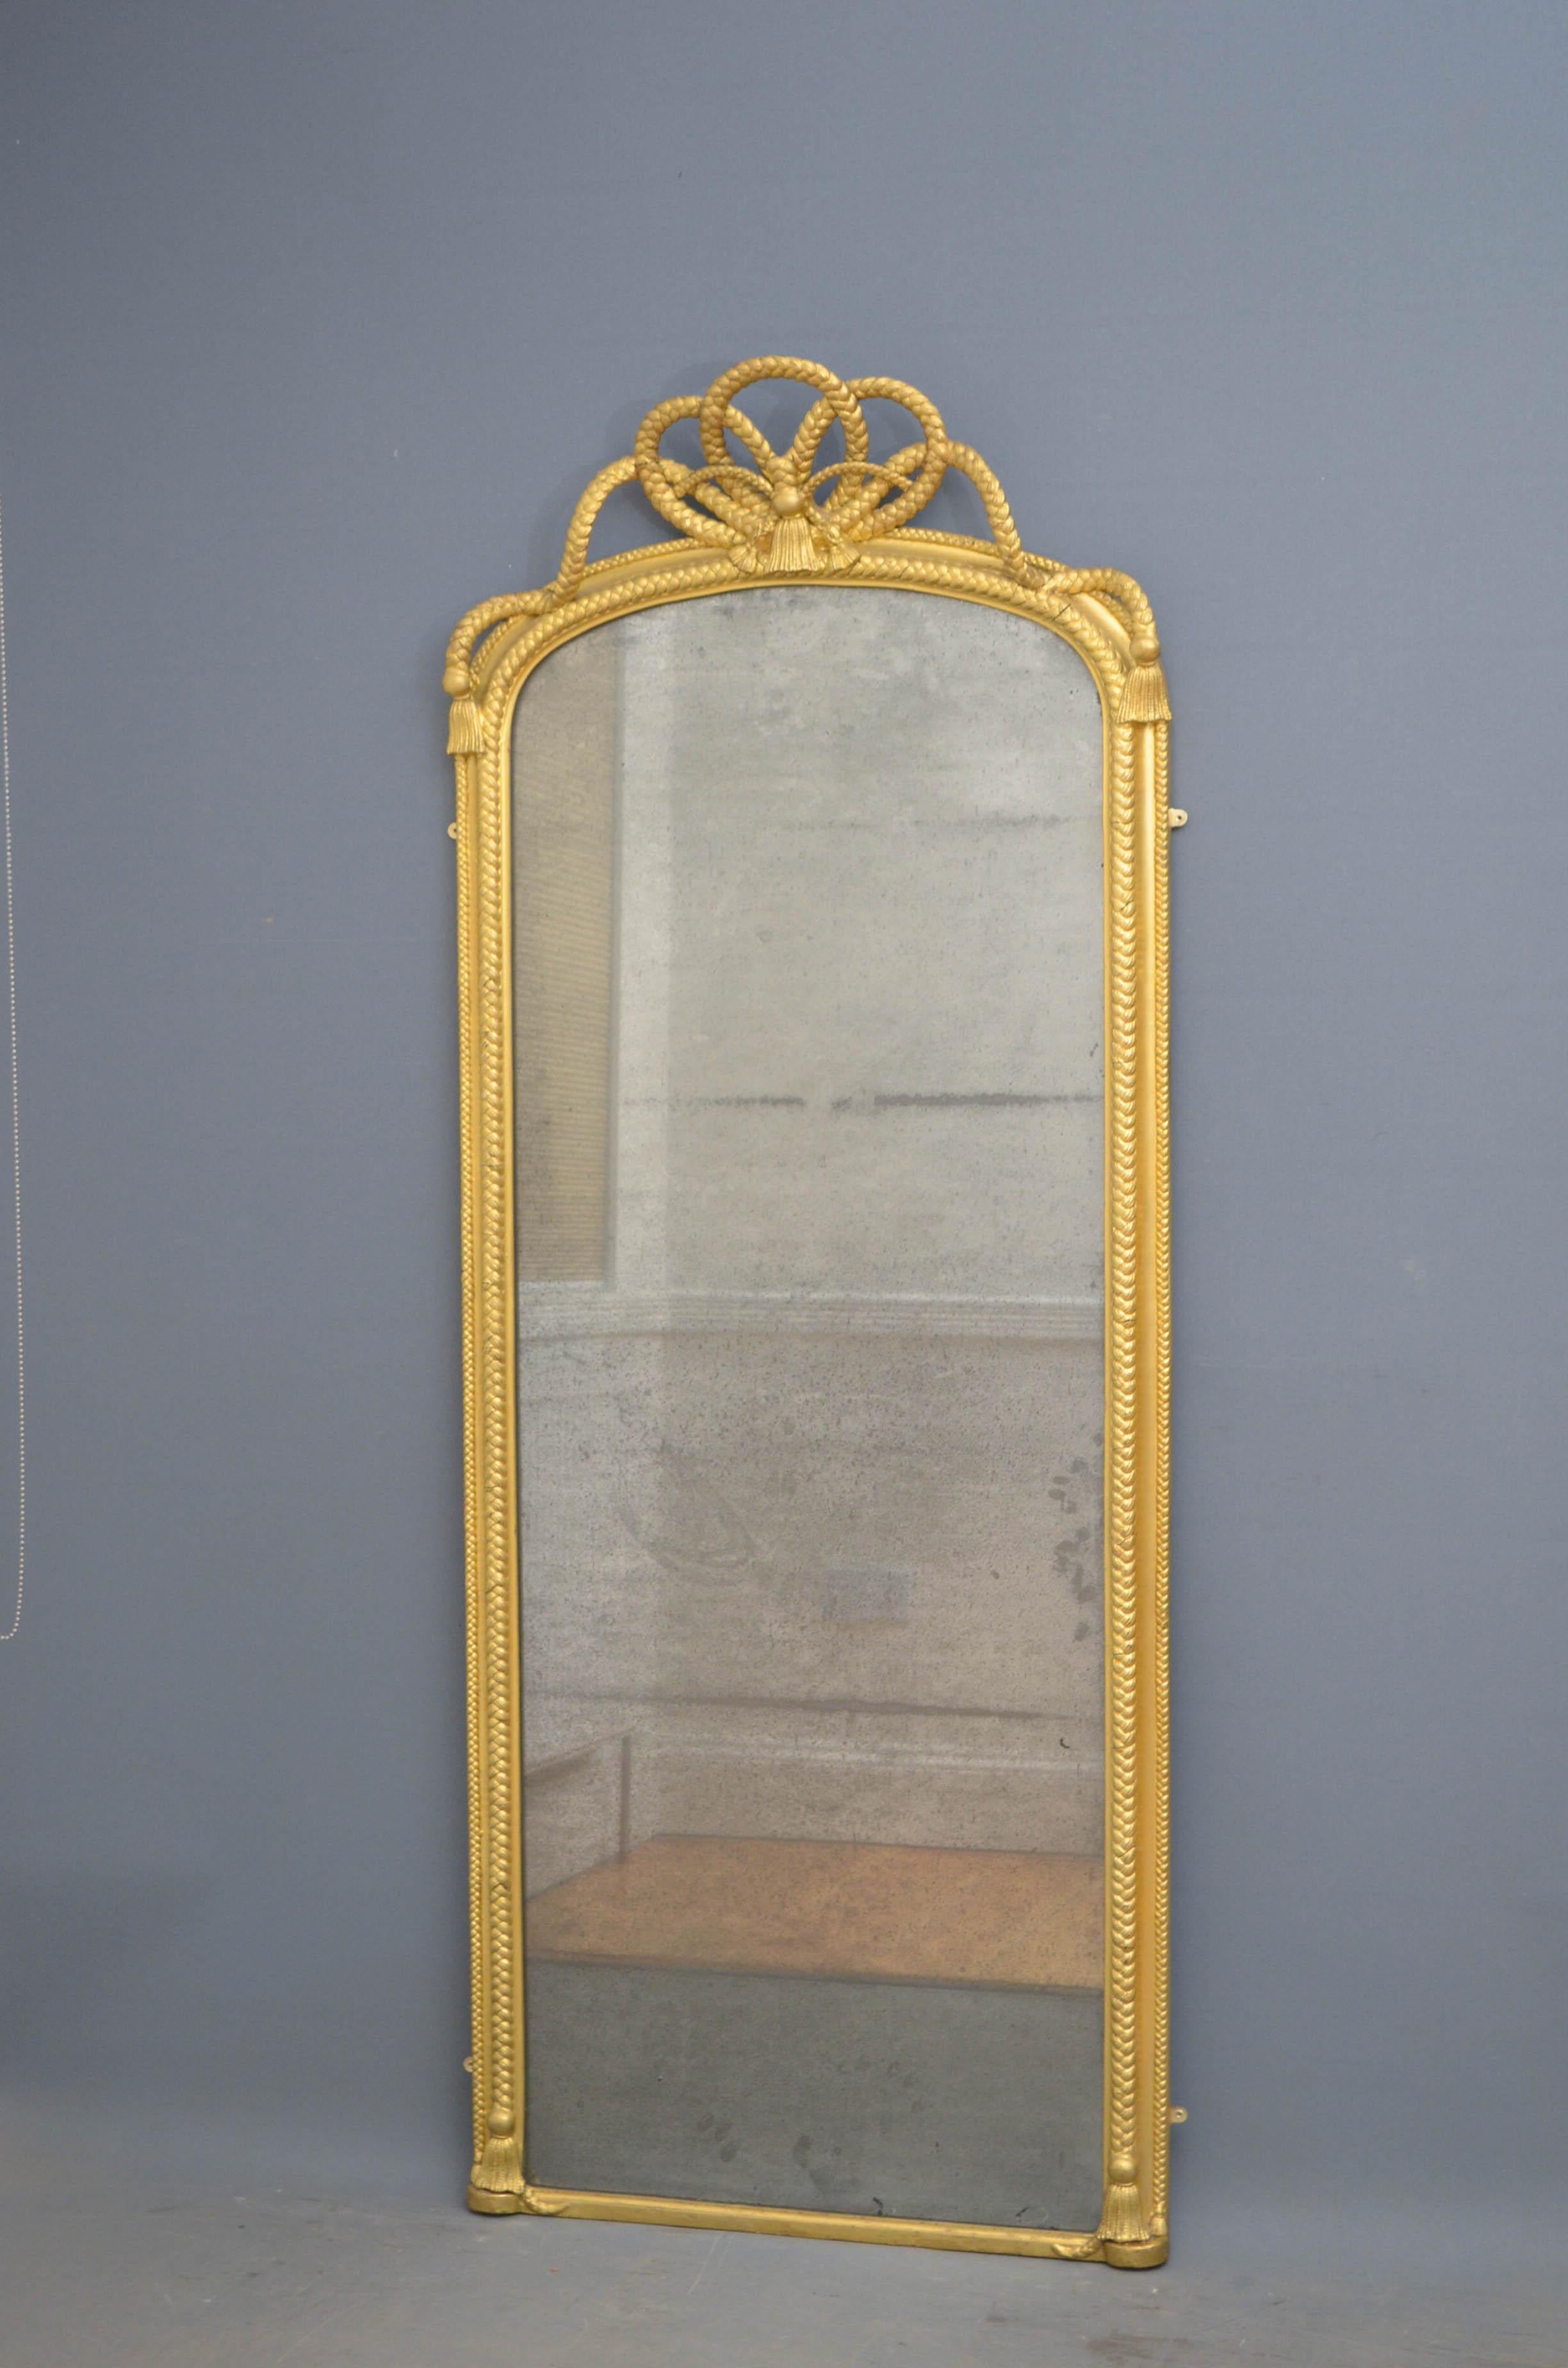 Sn4603, élégant miroir victorien à poser ou à suspendre au mur, avec verre d'origine largement foxé, dans un cadre décoré de corde avec un grand nœud de corde au sommet et des glands à la base. Ce miroir a été restauré dans le passé, mais il est en